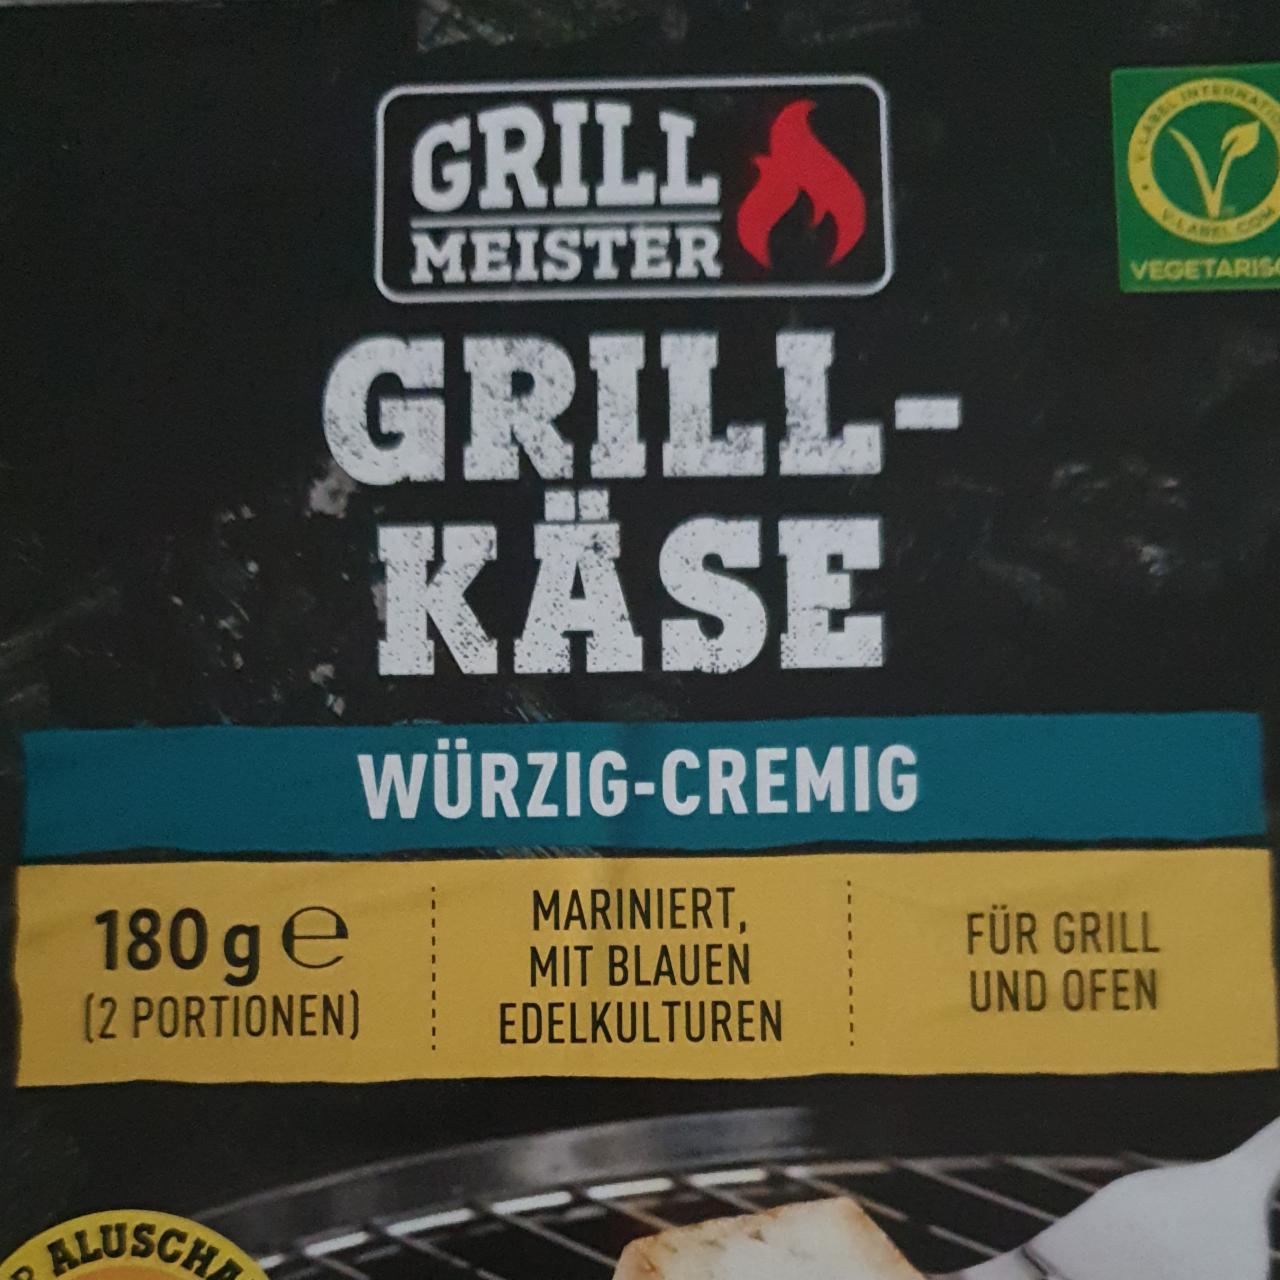 Fotografie - Grill-käse würzig-cremig Grill Meister